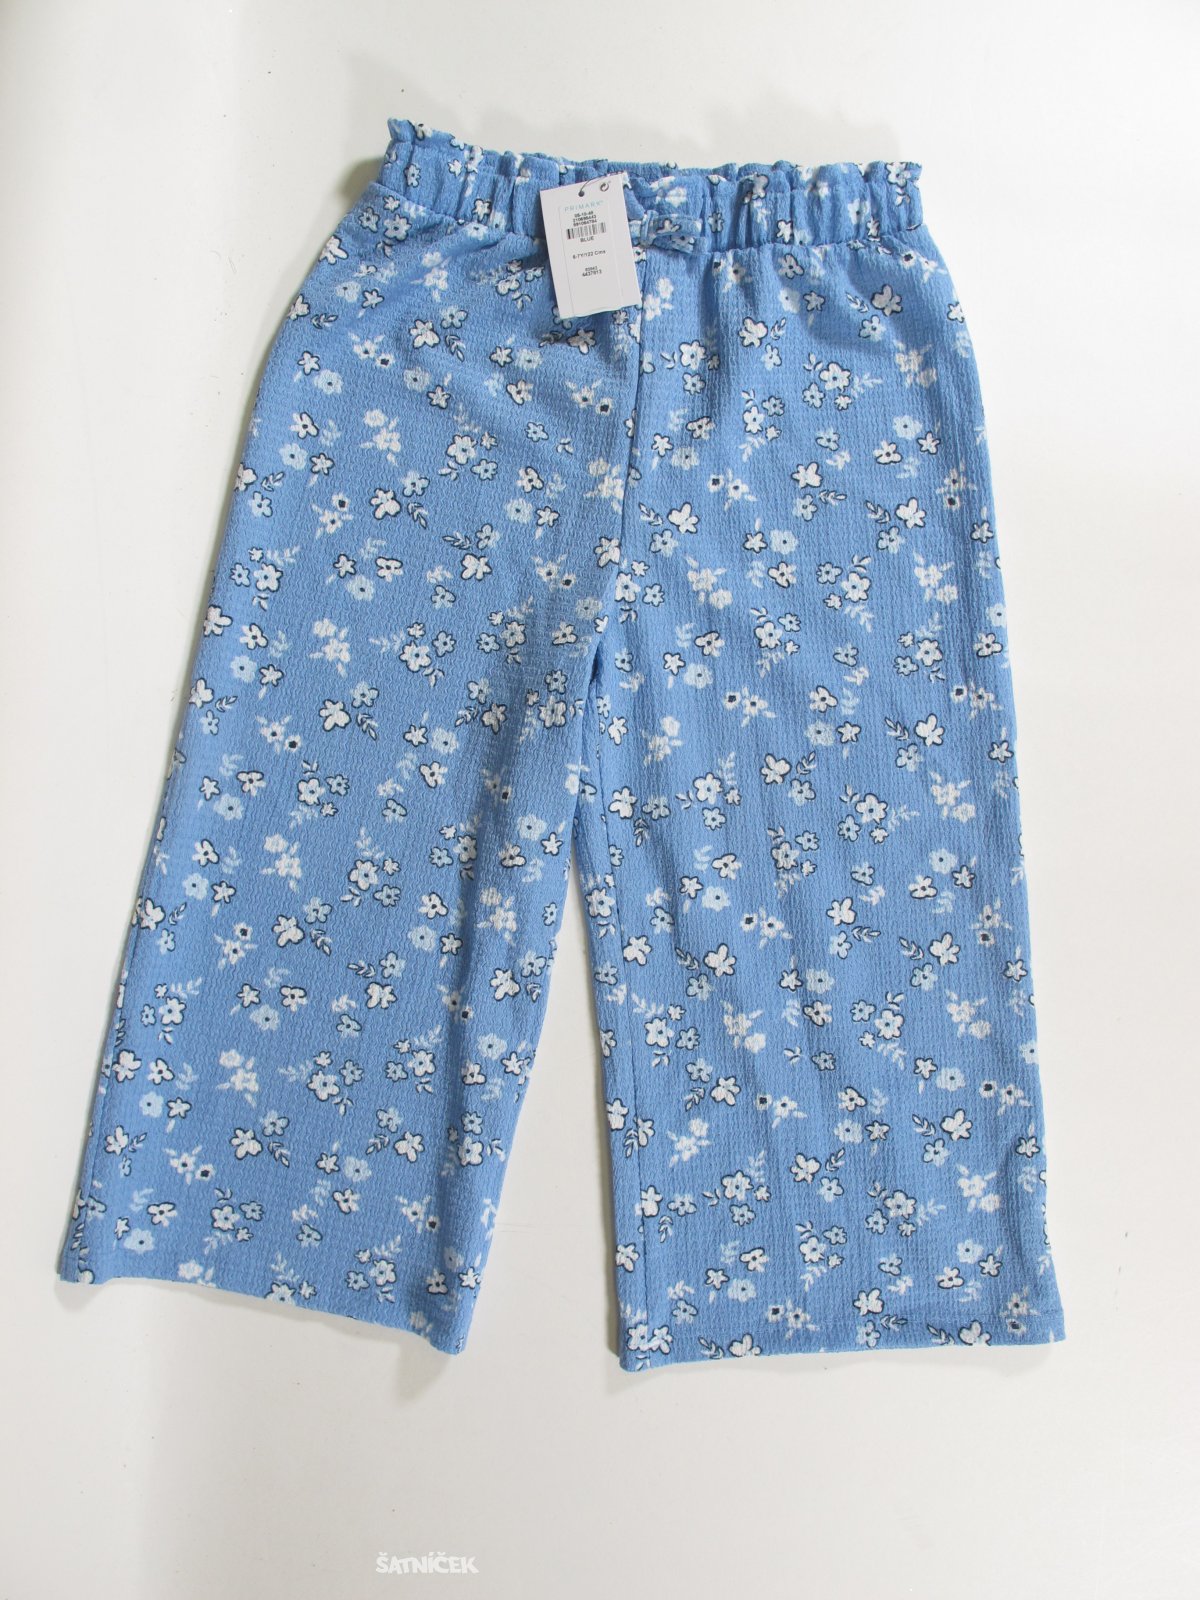 Letní kalhoty pro holky s kytkami outlet